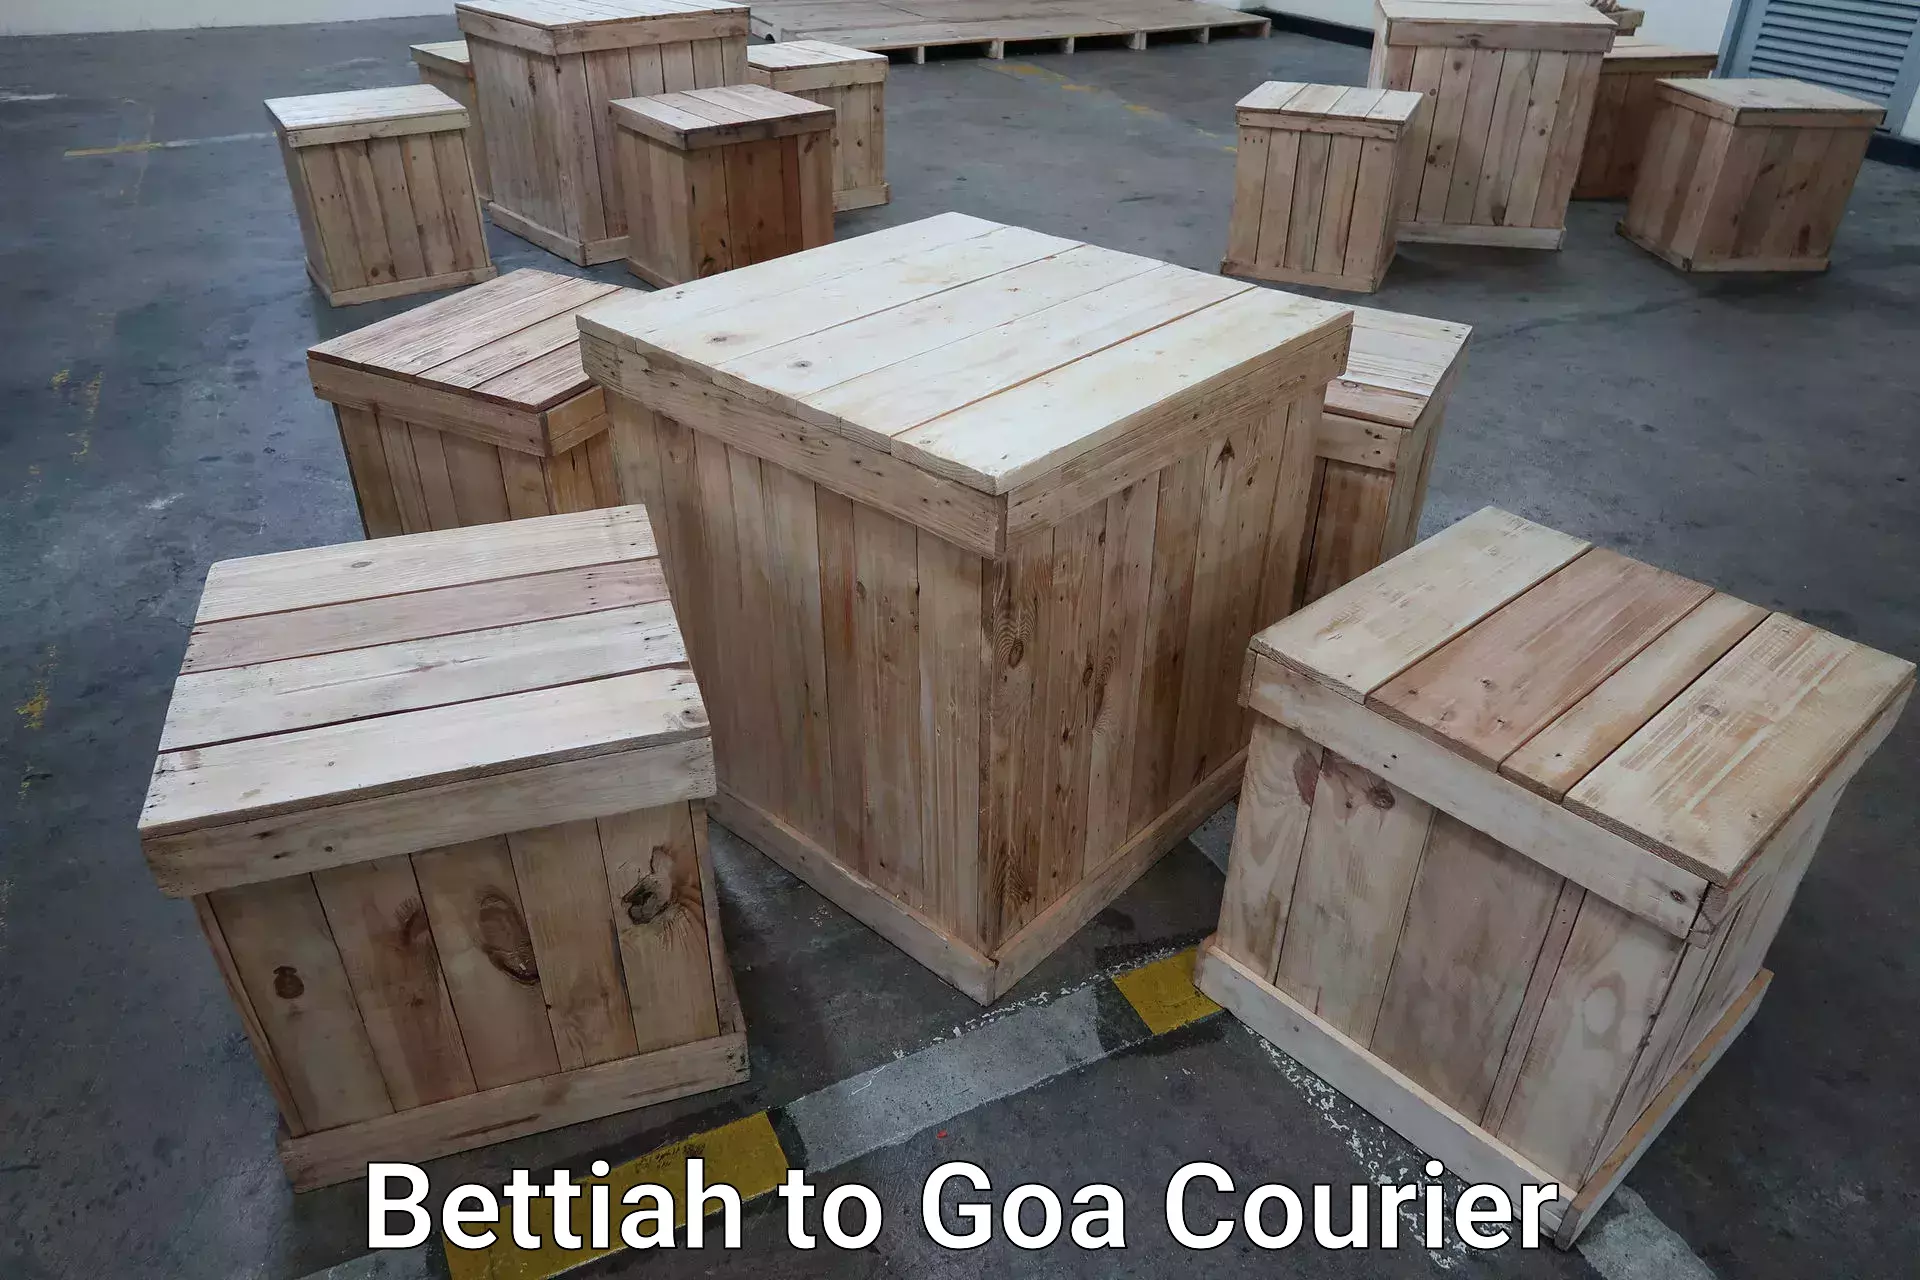 Door-to-door baggage service Bettiah to South Goa